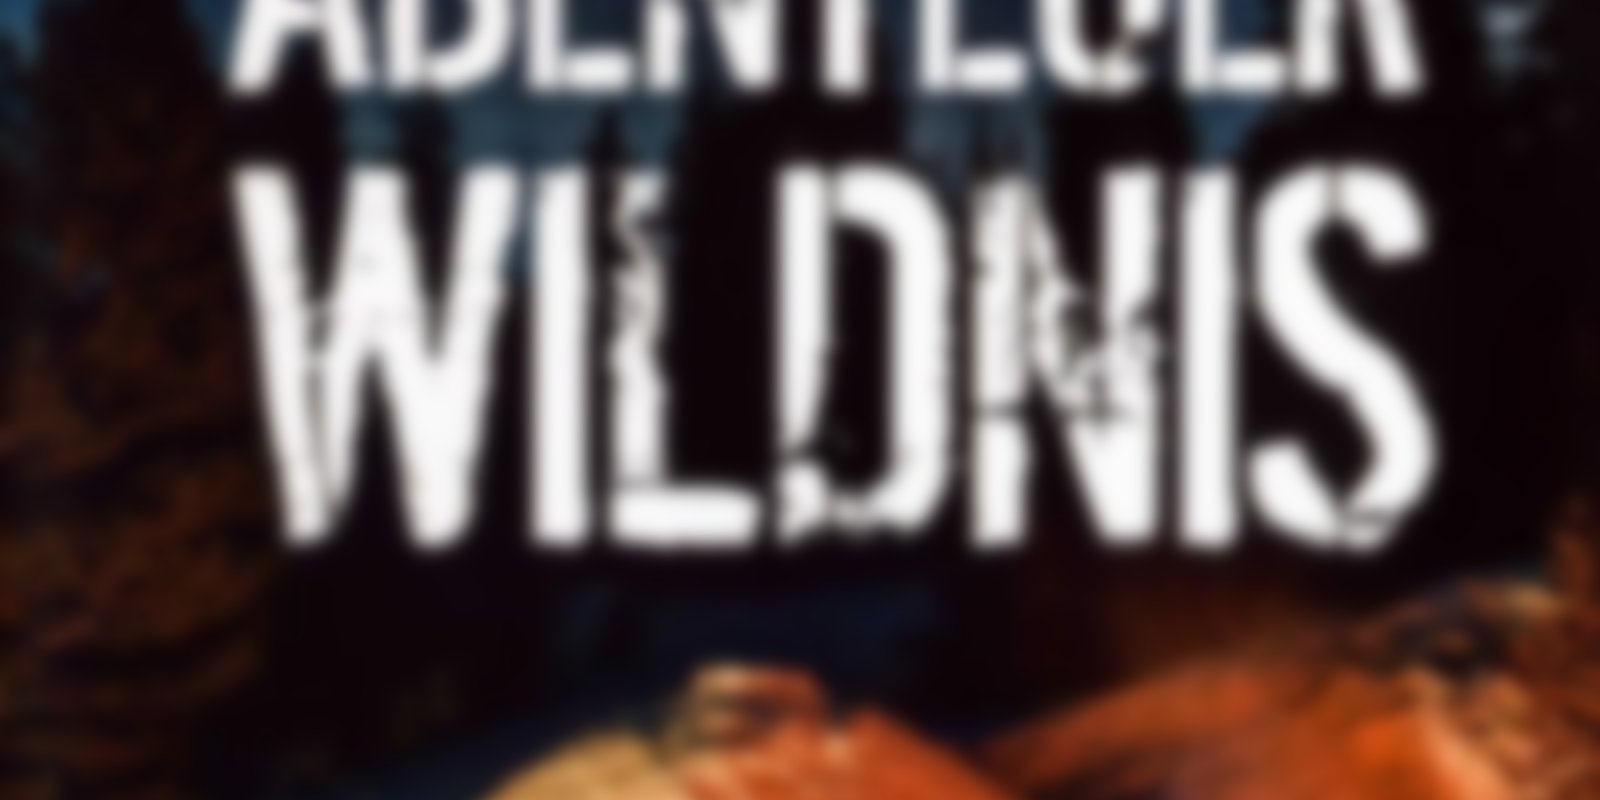 Abenteuer Wildnis - Volume 2